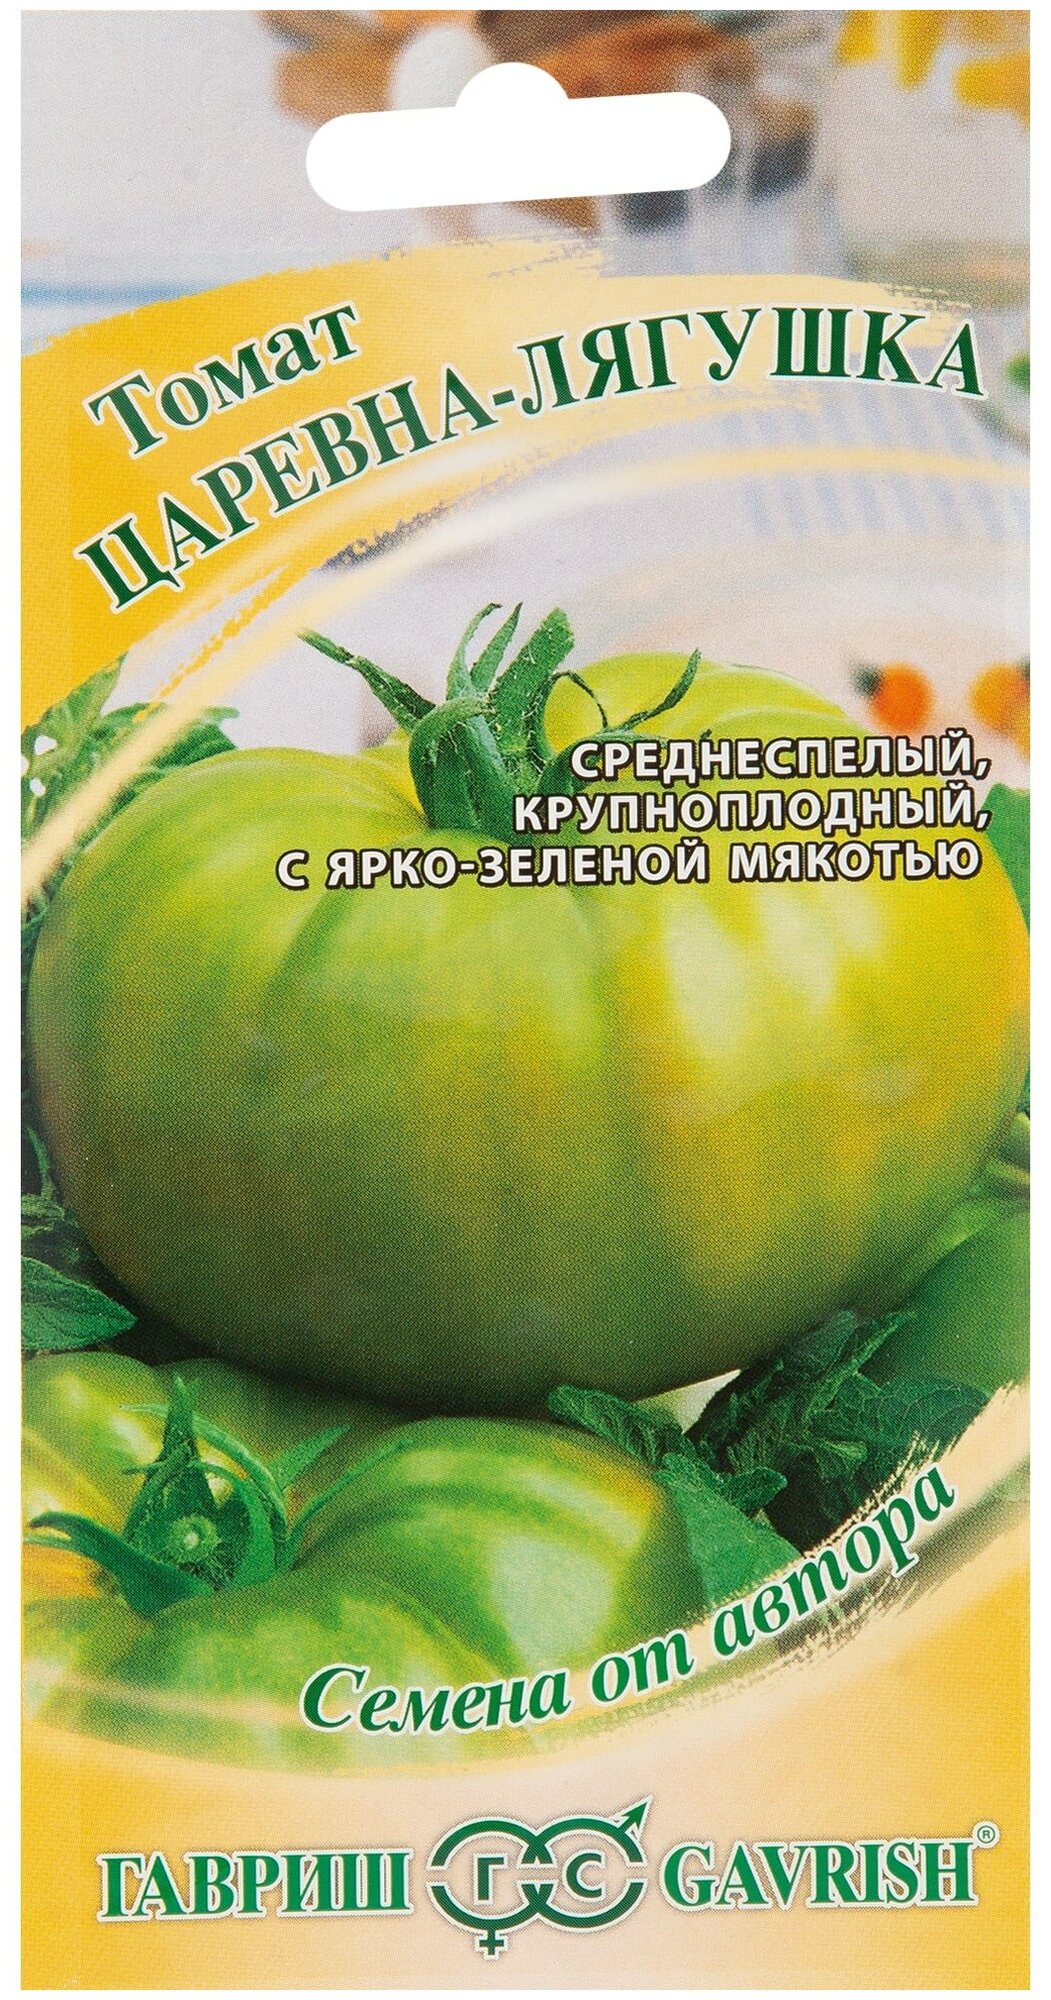 Томат Царевна-лягушка зеленоплодный серия Семена от автора 0.1 г